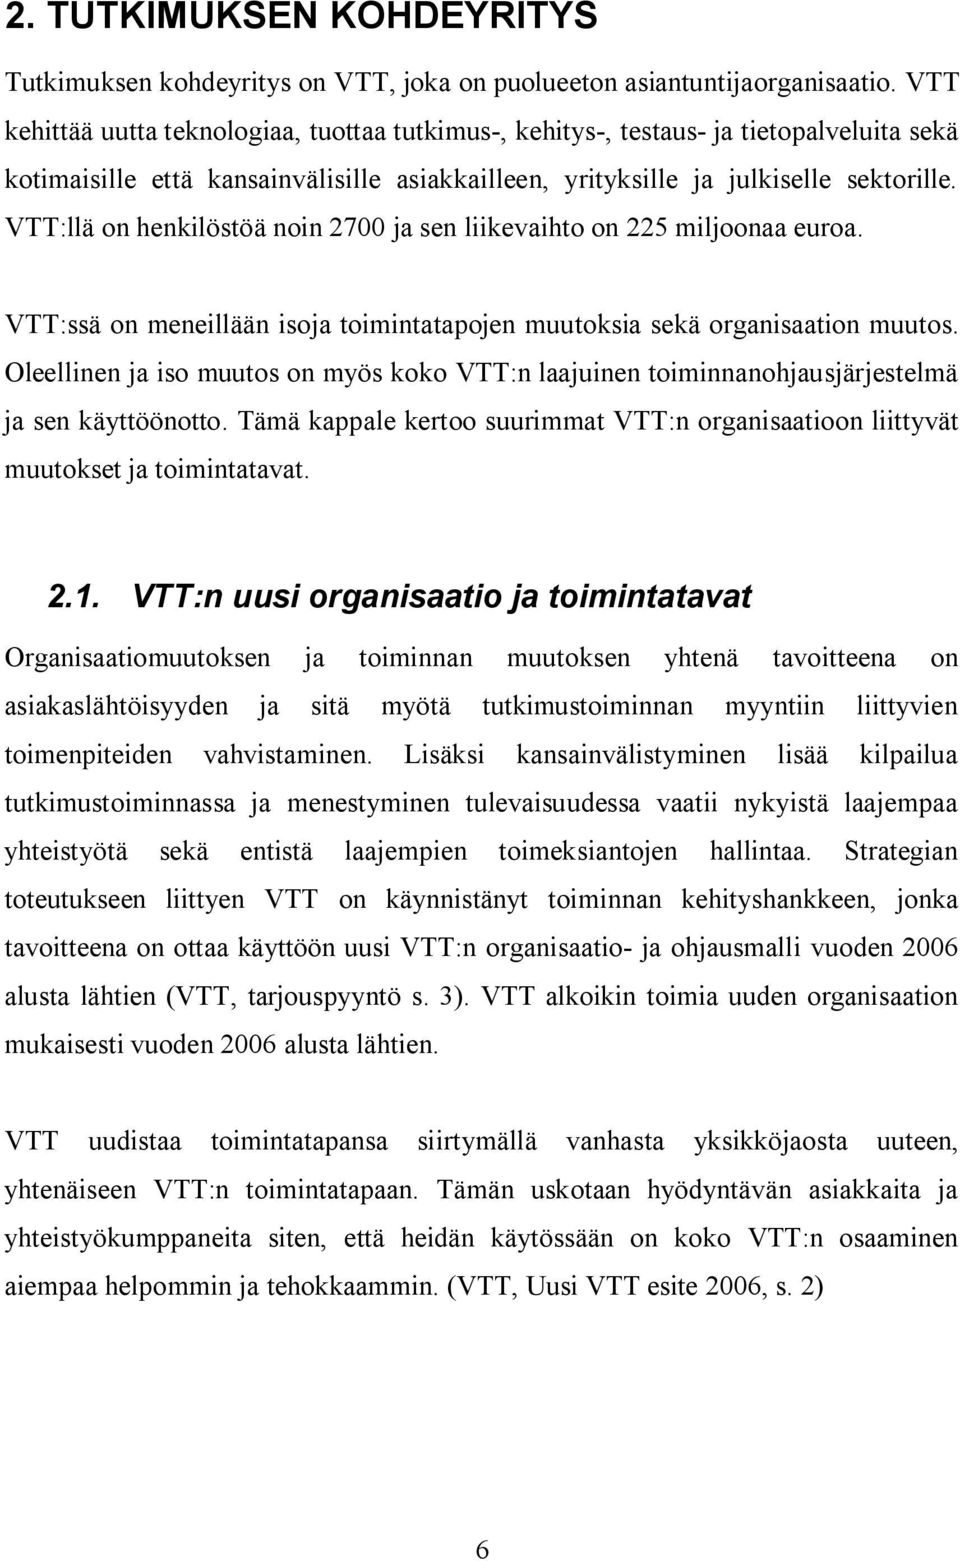 VTT:llä on henkilöstöä noin 2700 ja sen liikevaihto on 225 miljoonaa euroa. VTT:ssä on meneillään isoja toimintatapojen muutoksia sekä organisaation muutos.